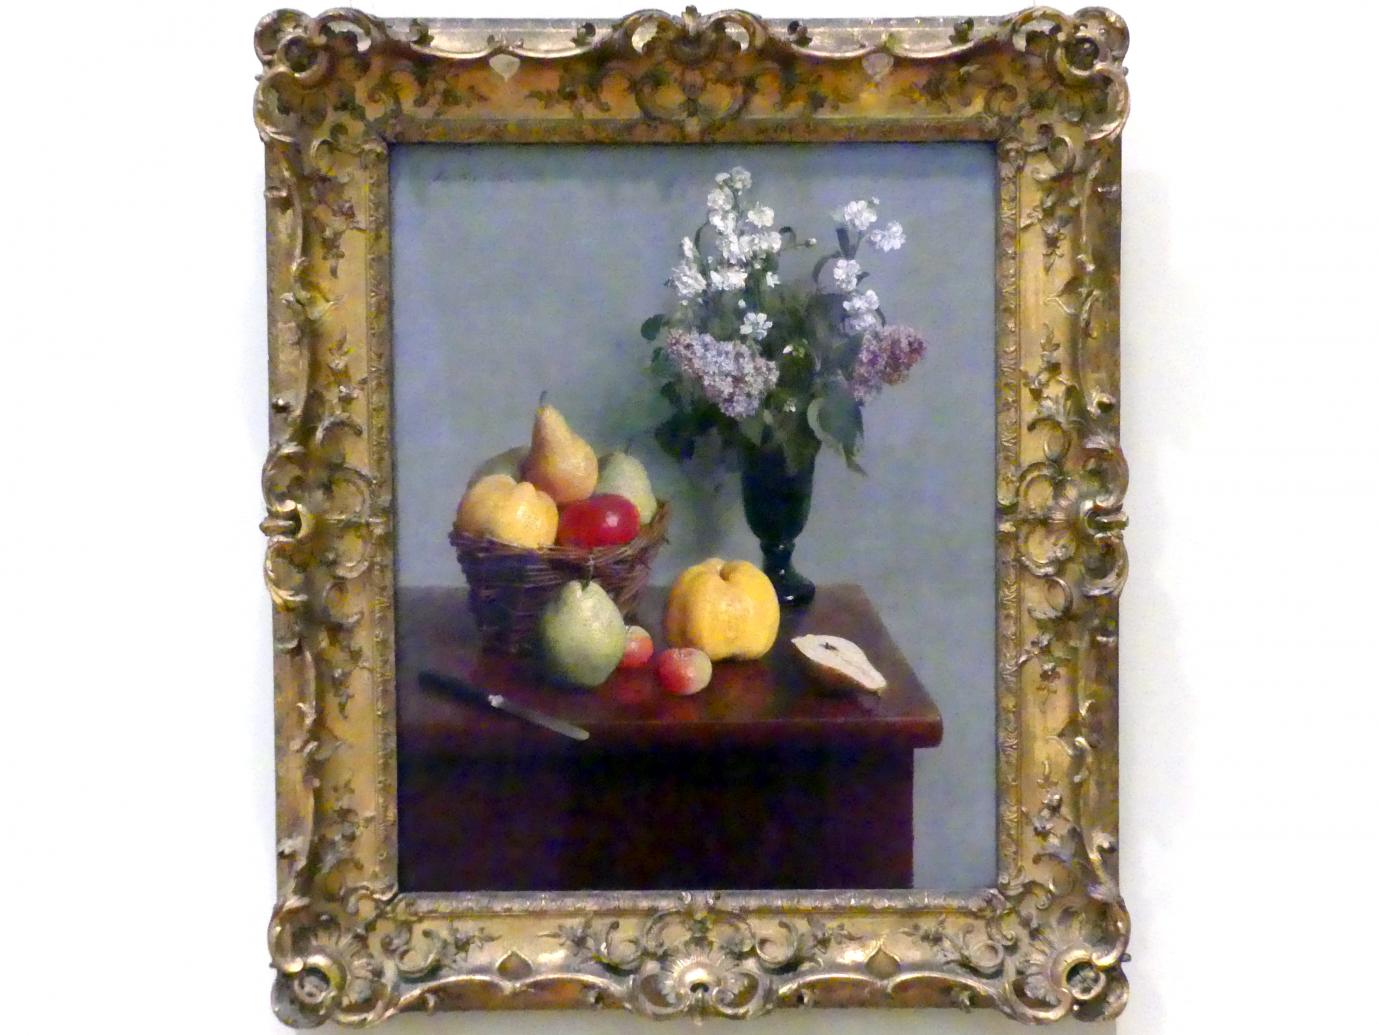 Henri Fantin-Latour (1858–1888), Stillleben mit Blumen und Obst, New York, Metropolitan Museum of Art (Met), Saal 824, 1866